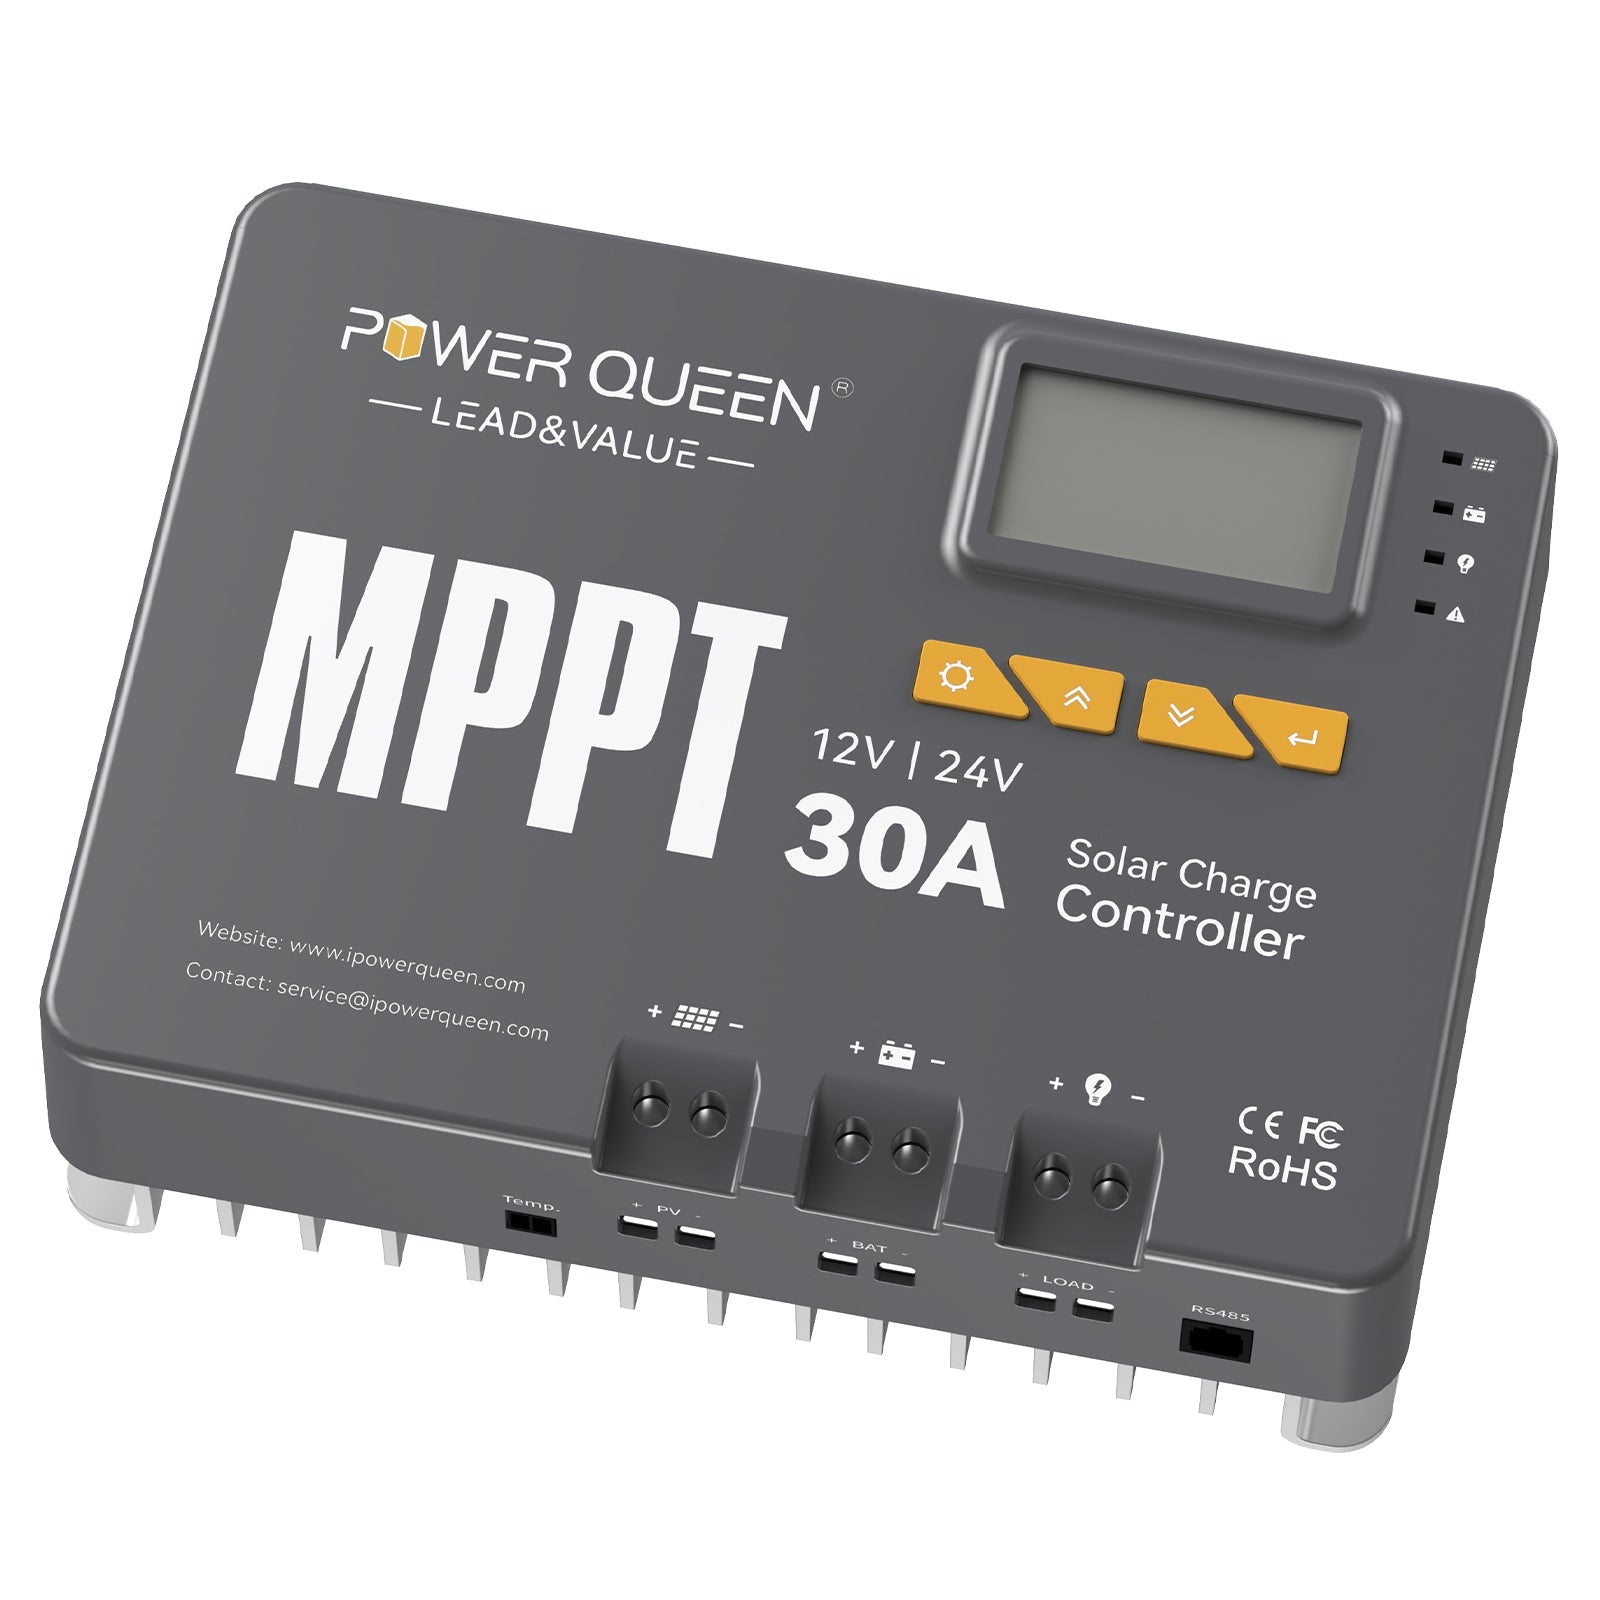 【0% IVA】Regolatore di carica solare Power Queen MPPT 12/24V 30A con modulo Bluetooth